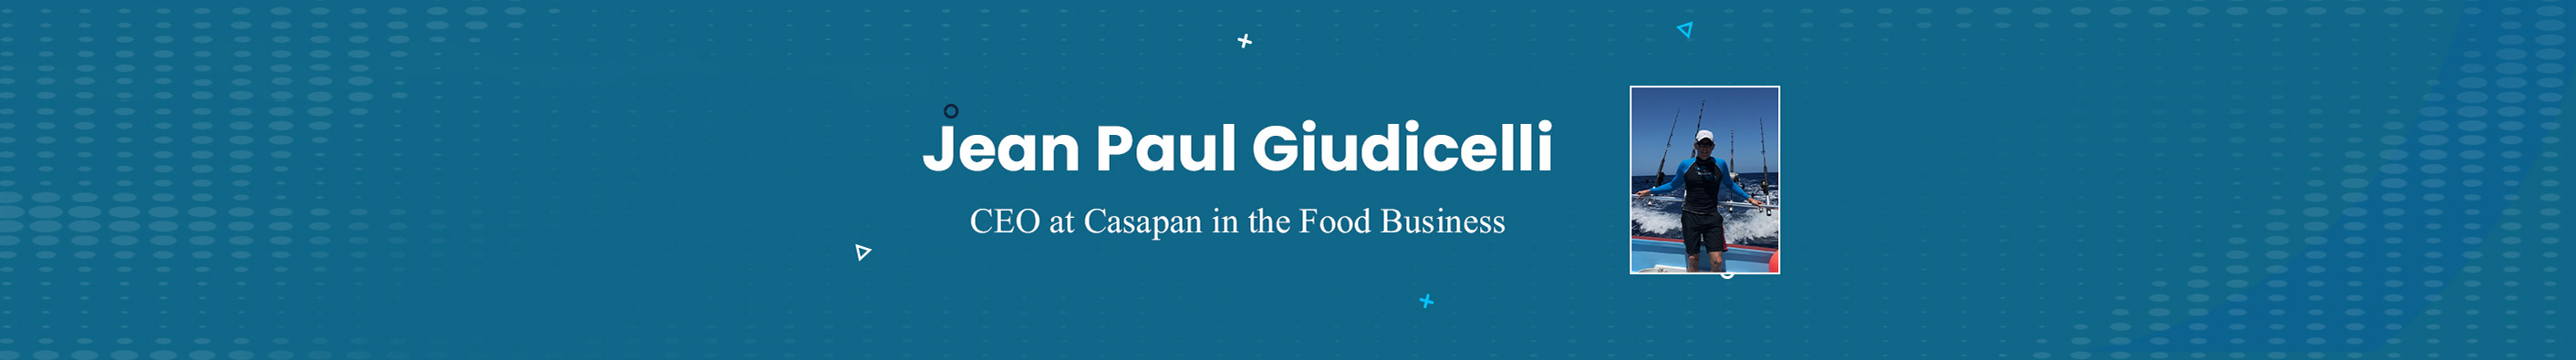 Jean Paul Giudicelli's profile banner